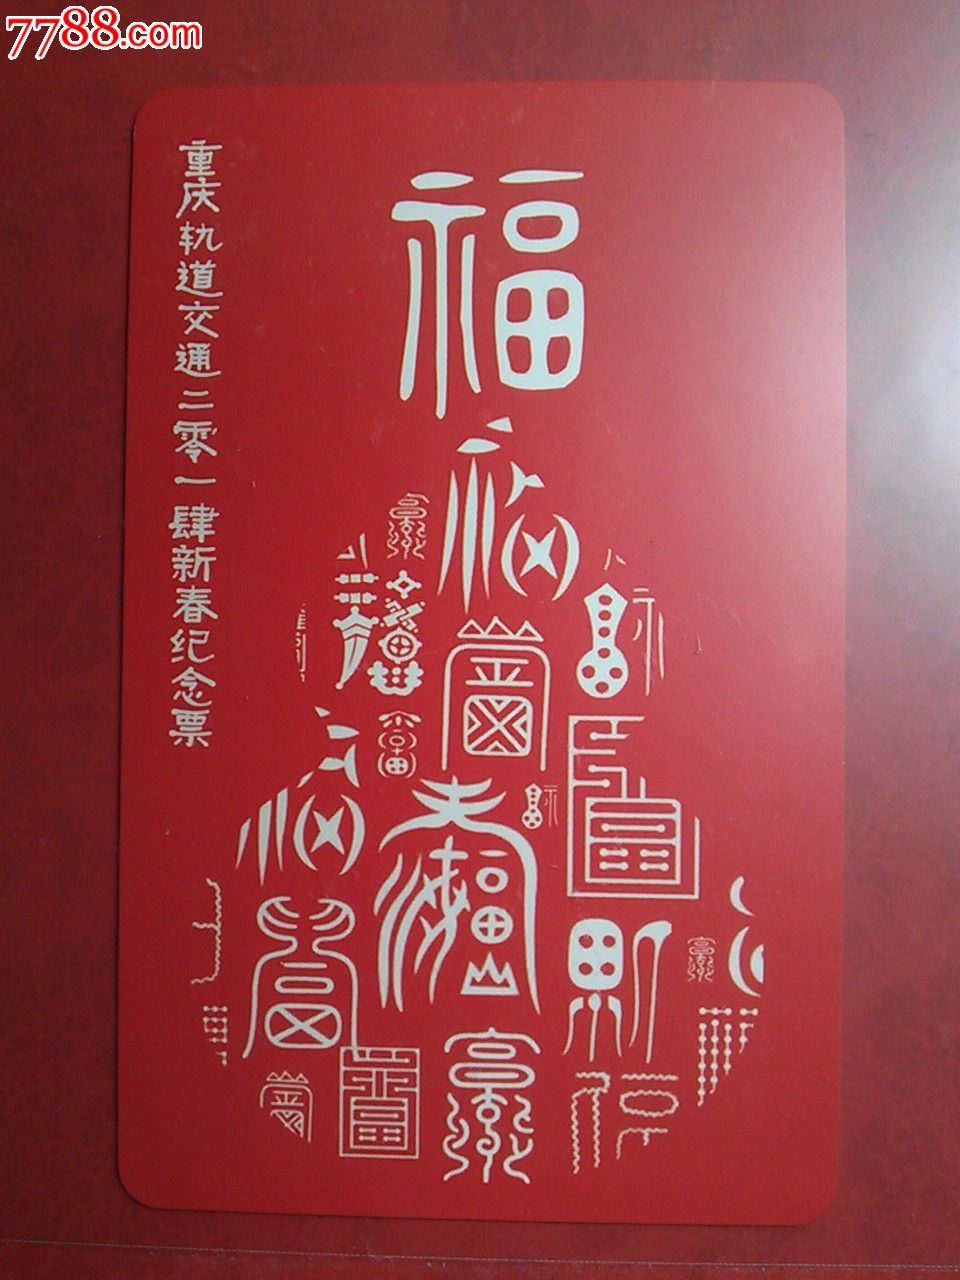 重庆轻轨纪念卡:甲午马年福1全【2014年新春